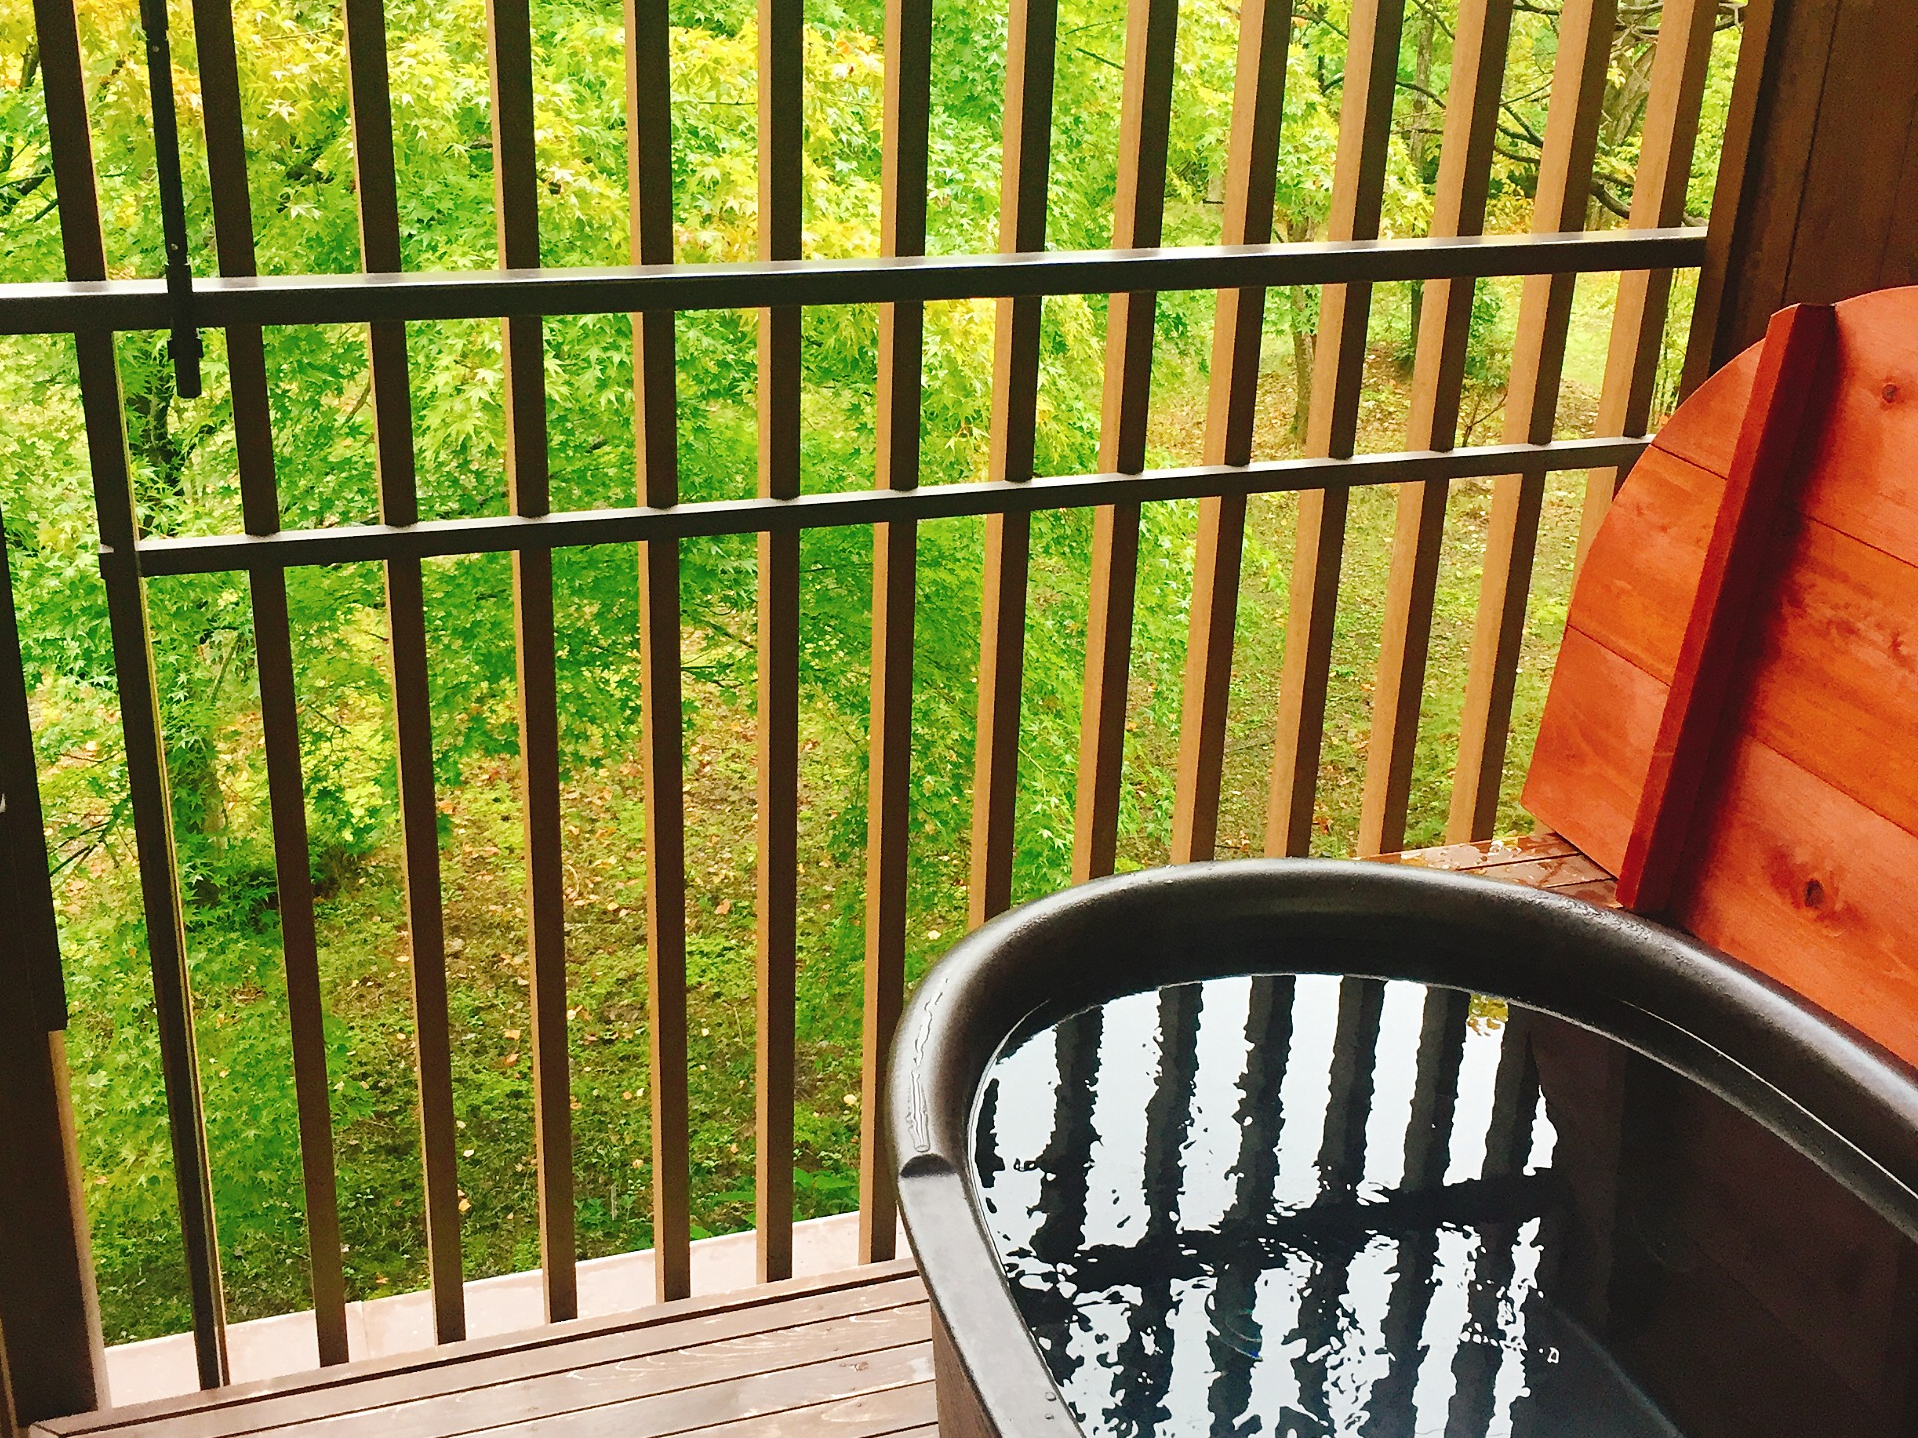 栃木 マタニティ温泉旅行 星野リゾート 界 鬼怒川 の露天風呂付き客室で過ごすのんびり旅